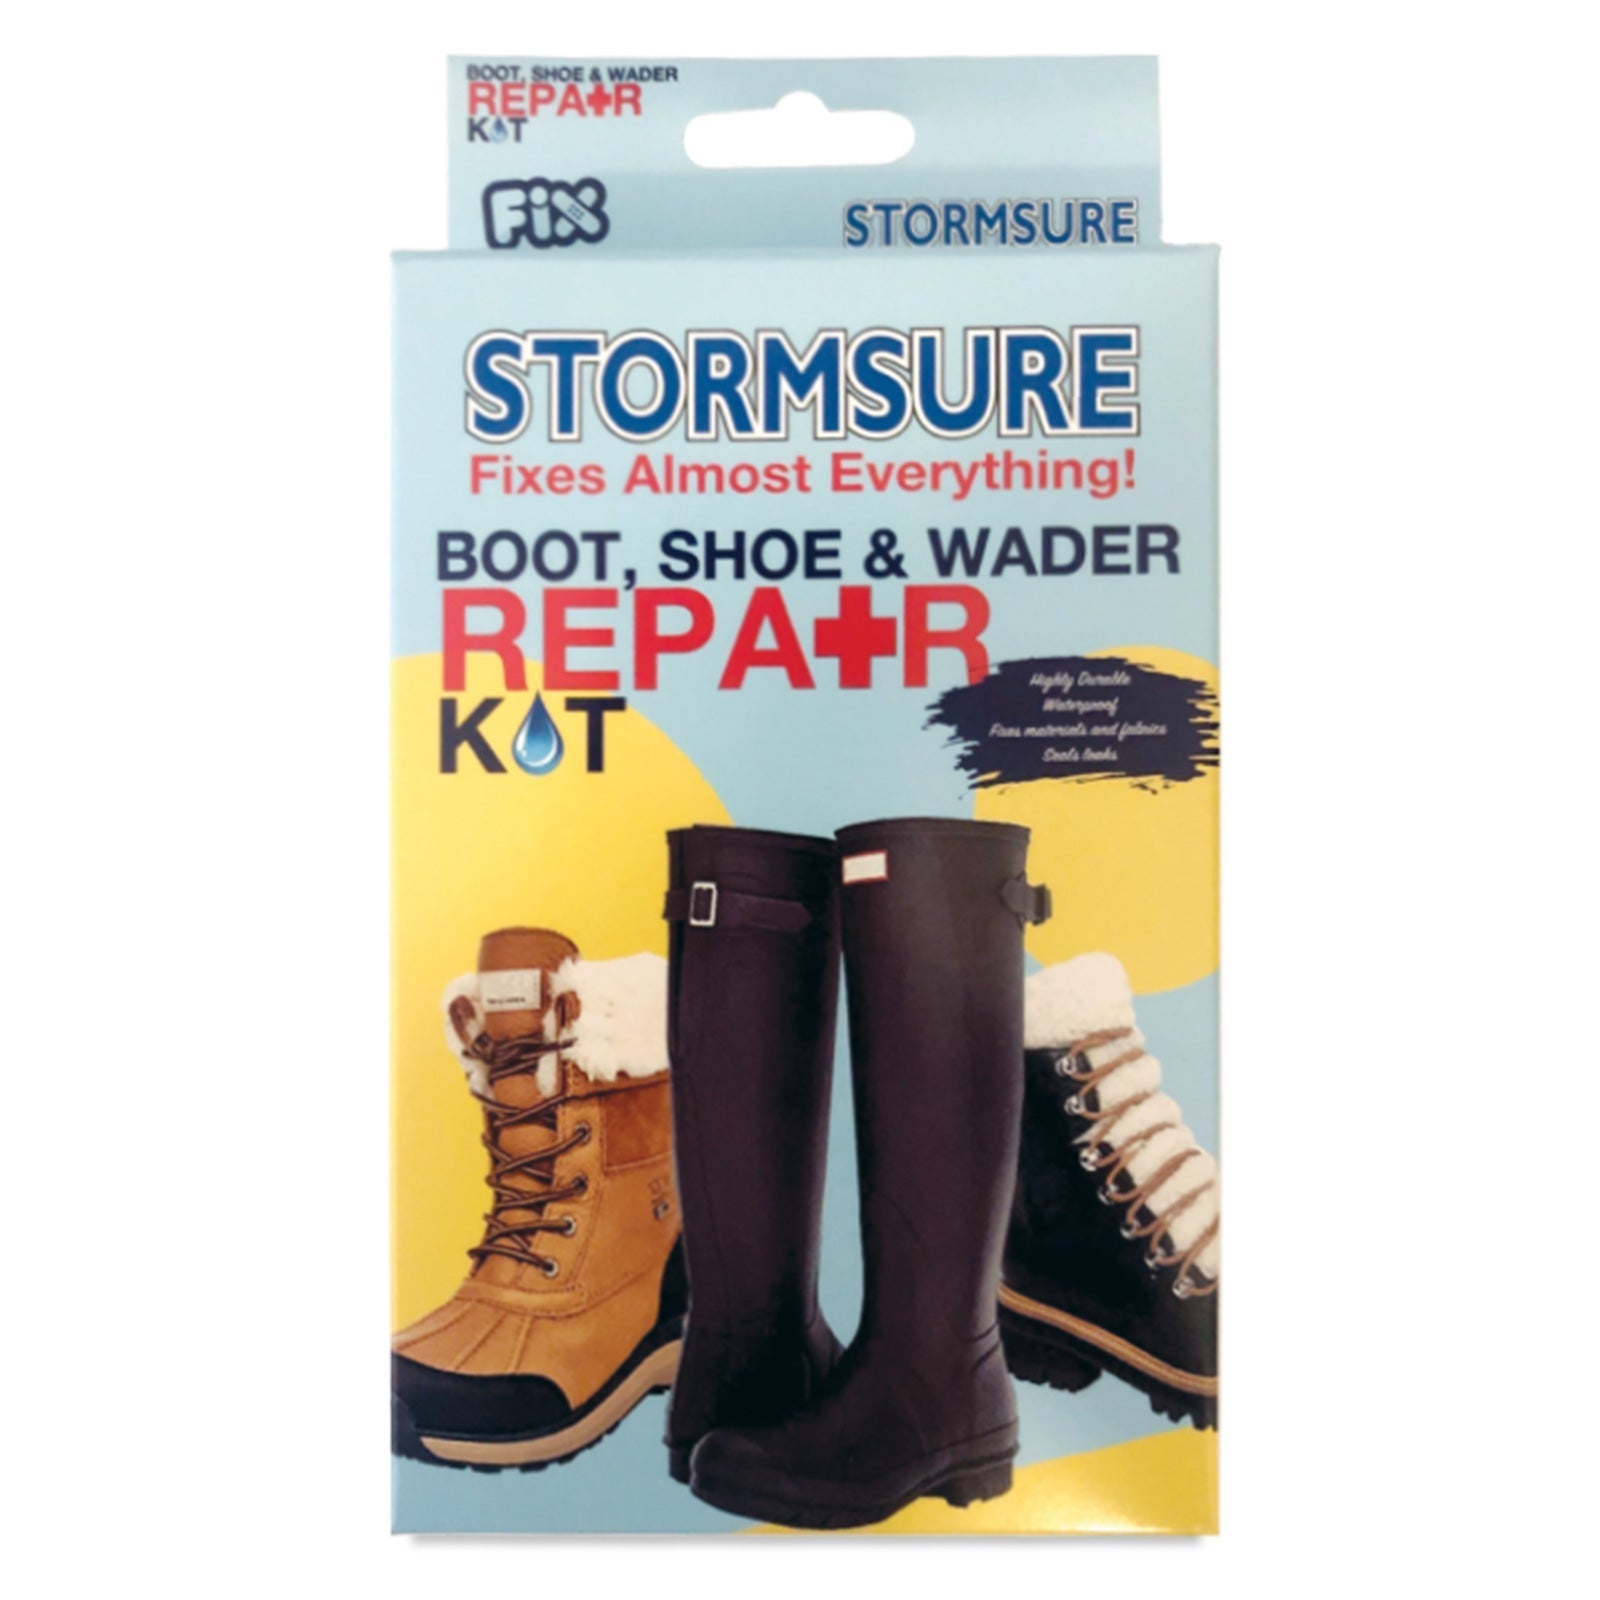 Stormsure Boot, Shoe & Wader Repair Kit